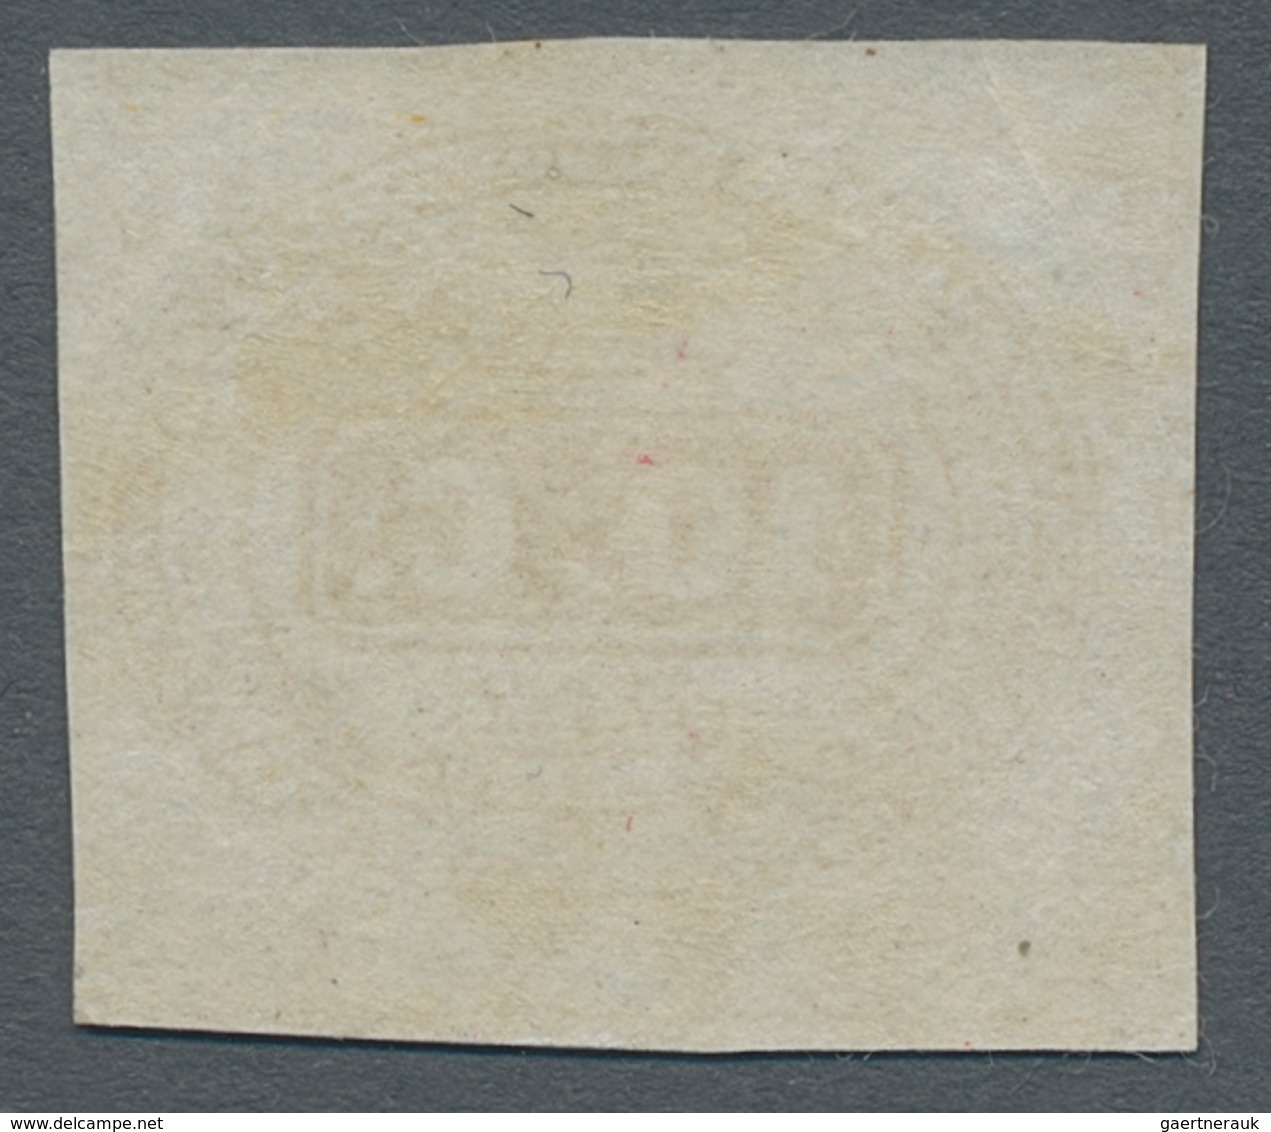 Italien - Portomarken: 1863, "10 C. Ocher", Value In Fresh Color With Full Margins And Full Original - Strafport